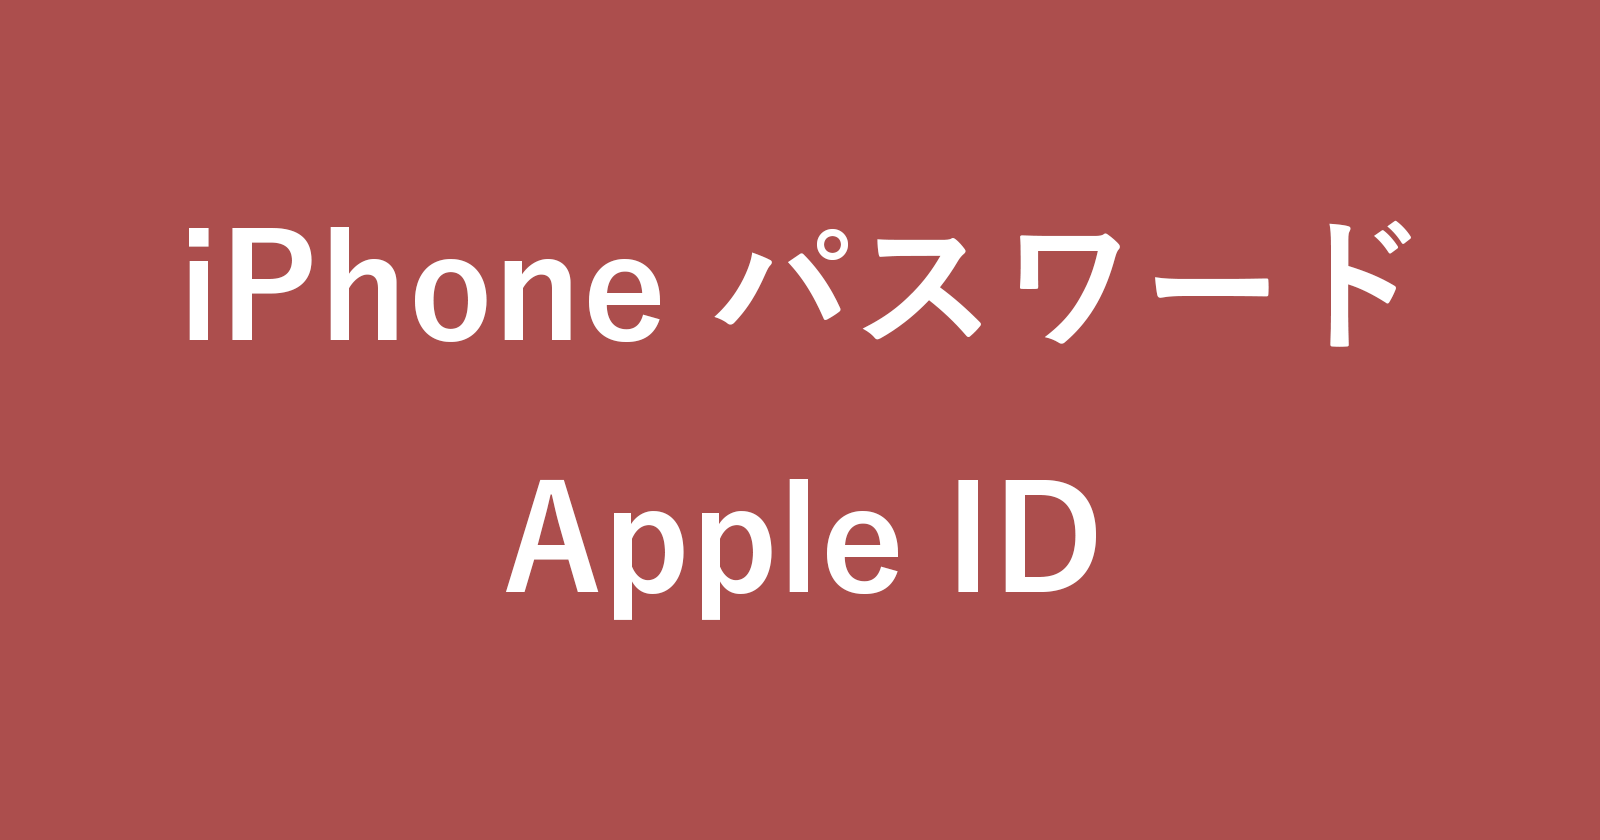 iphone apple id password